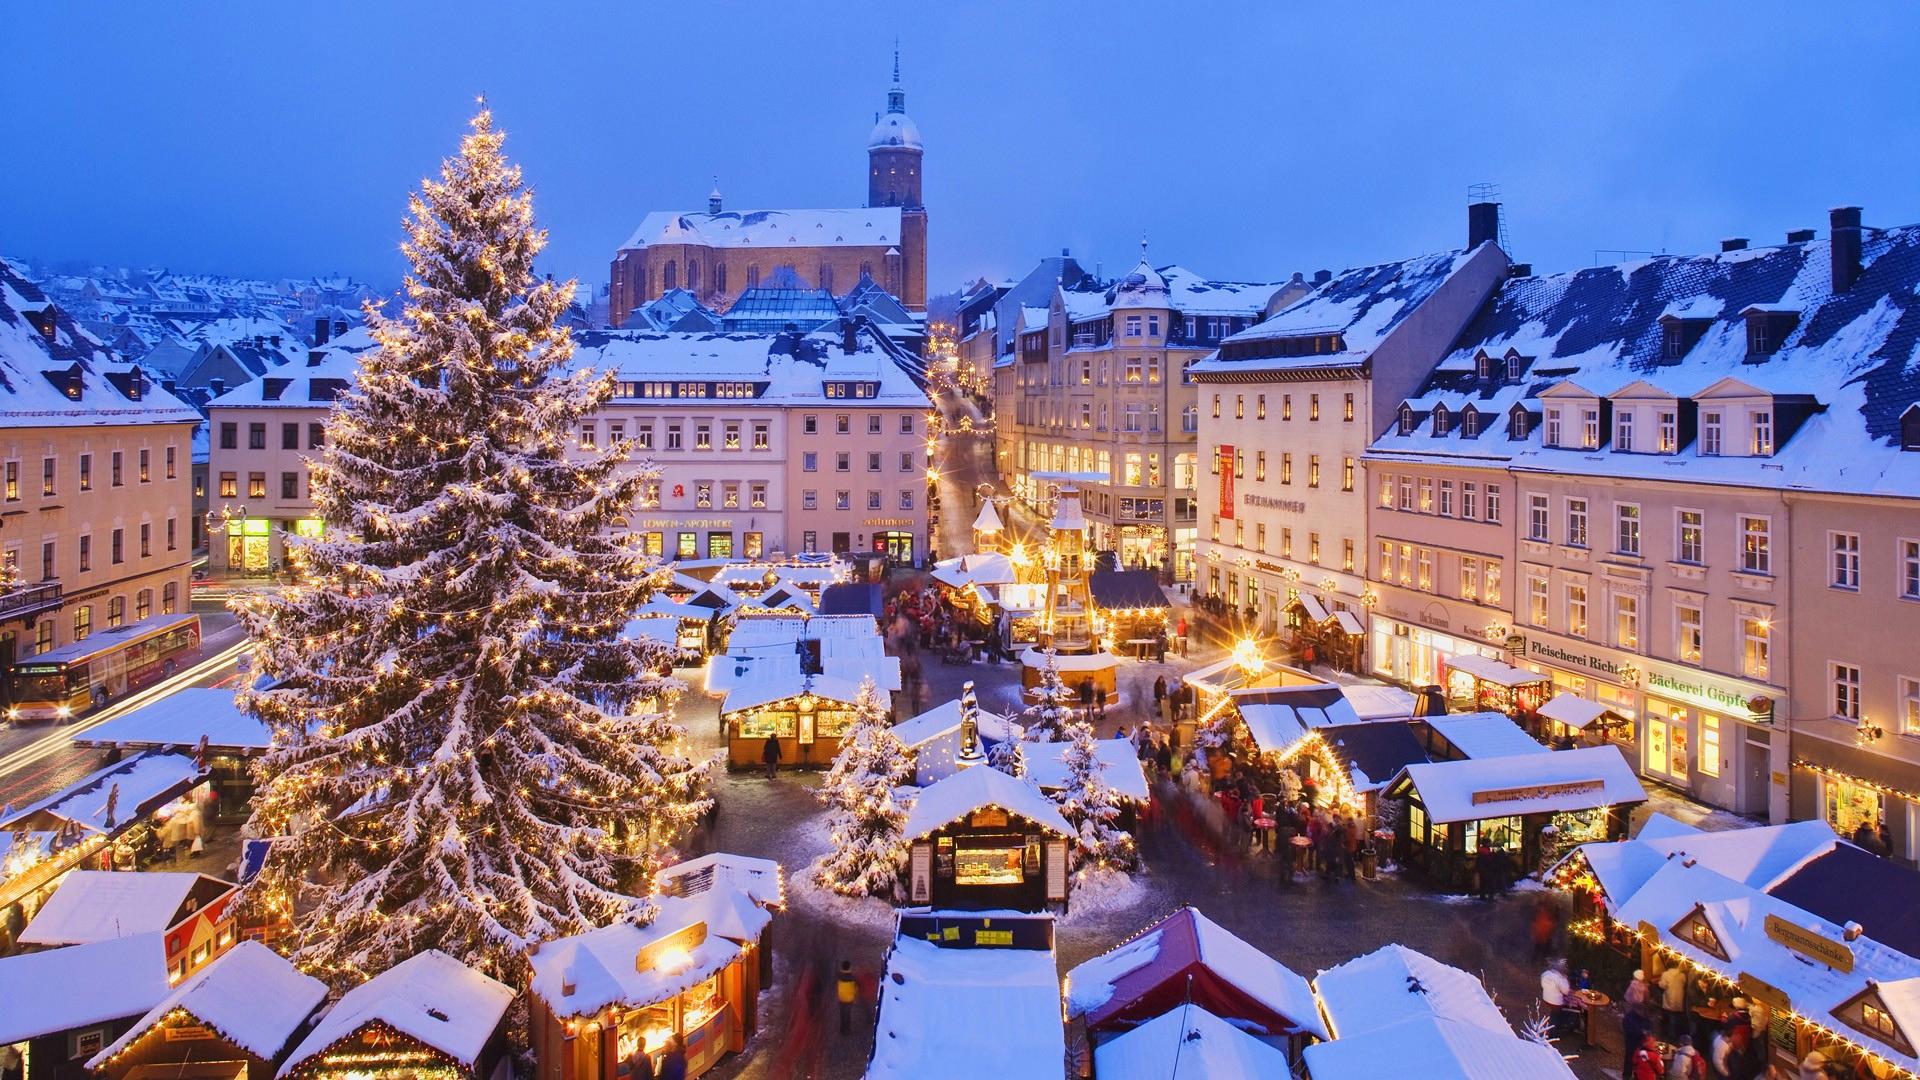 Christmas - Munich Christmas Market 2018 , HD Wallpaper & Backgrounds